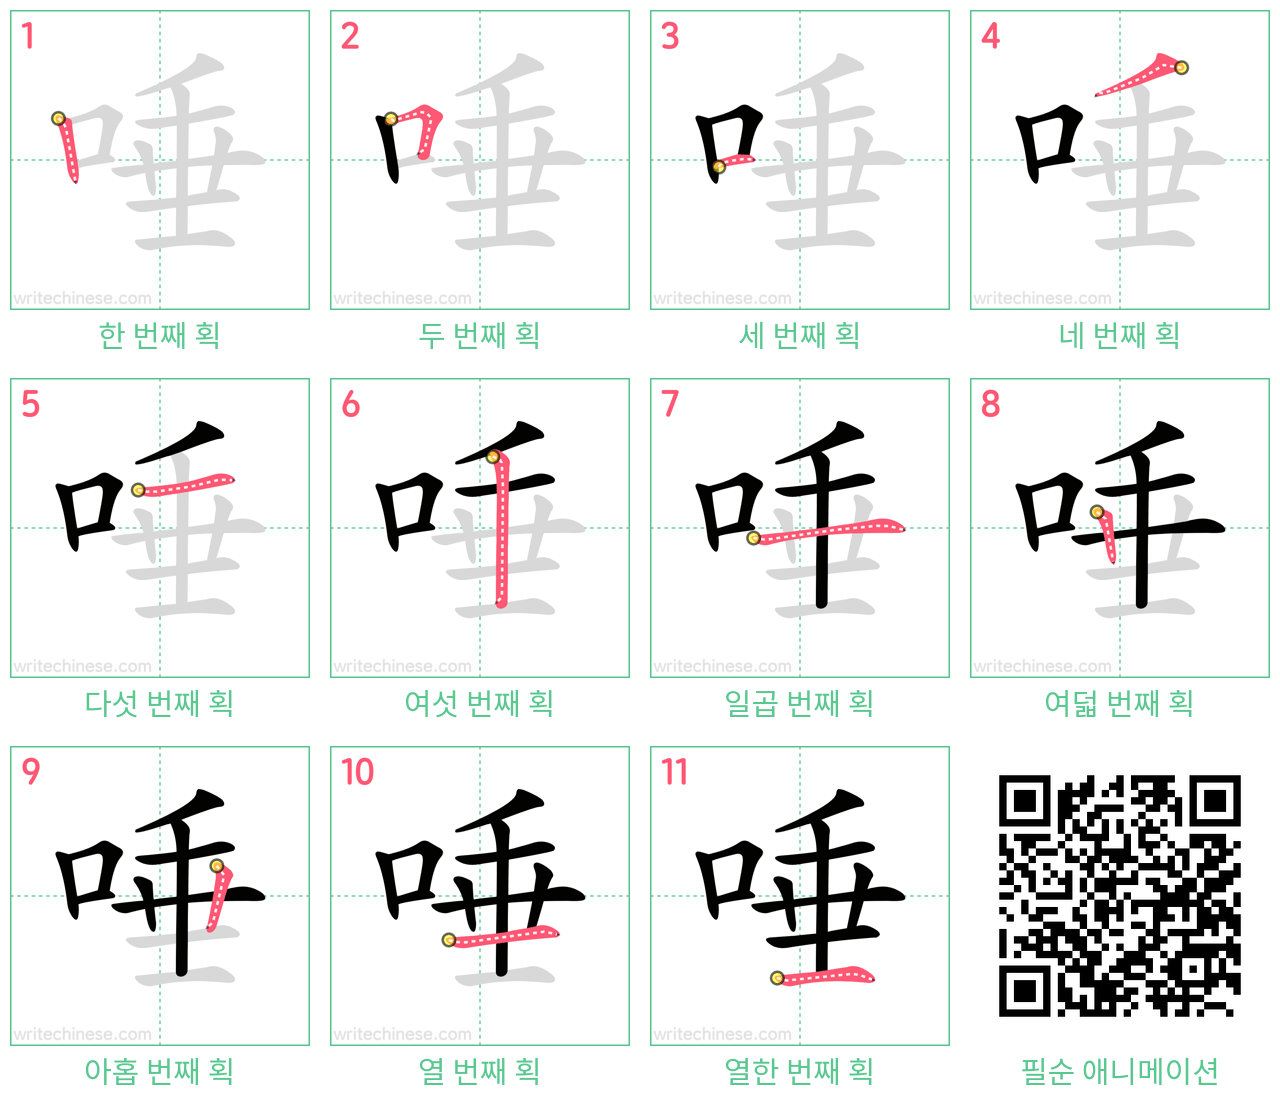 唾 step-by-step stroke order diagrams